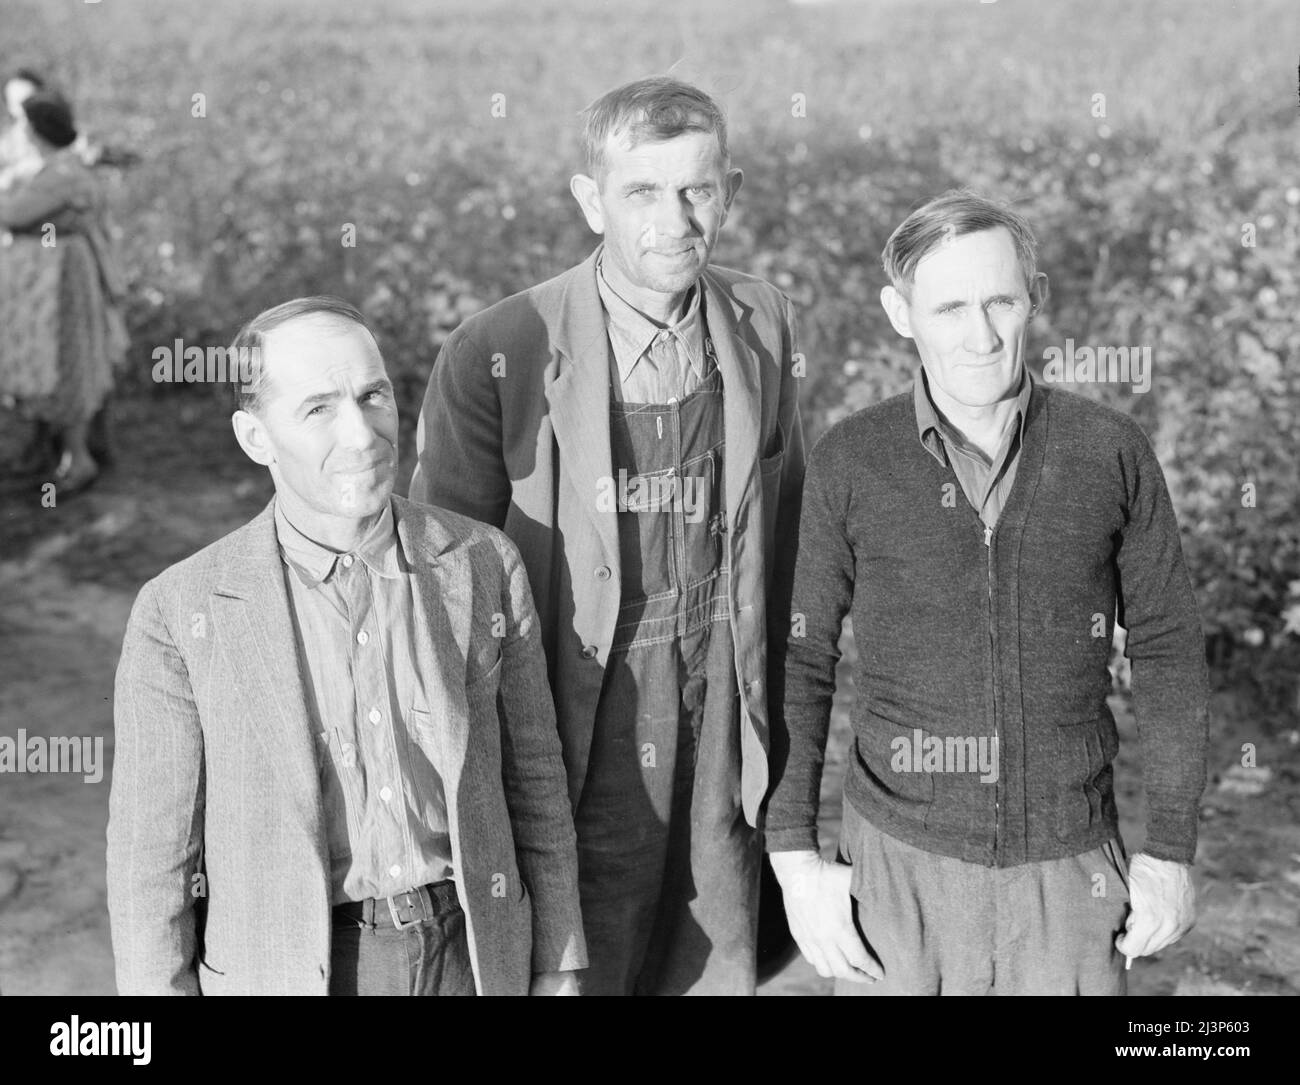 Questi tre uomini comprendono il consiglio di amministrazione della Mineral King Farm Association, contea di Tulare, California. Sono stati eletti dal proprio gruppo per dirigere questa unità agricola. Foto Stock